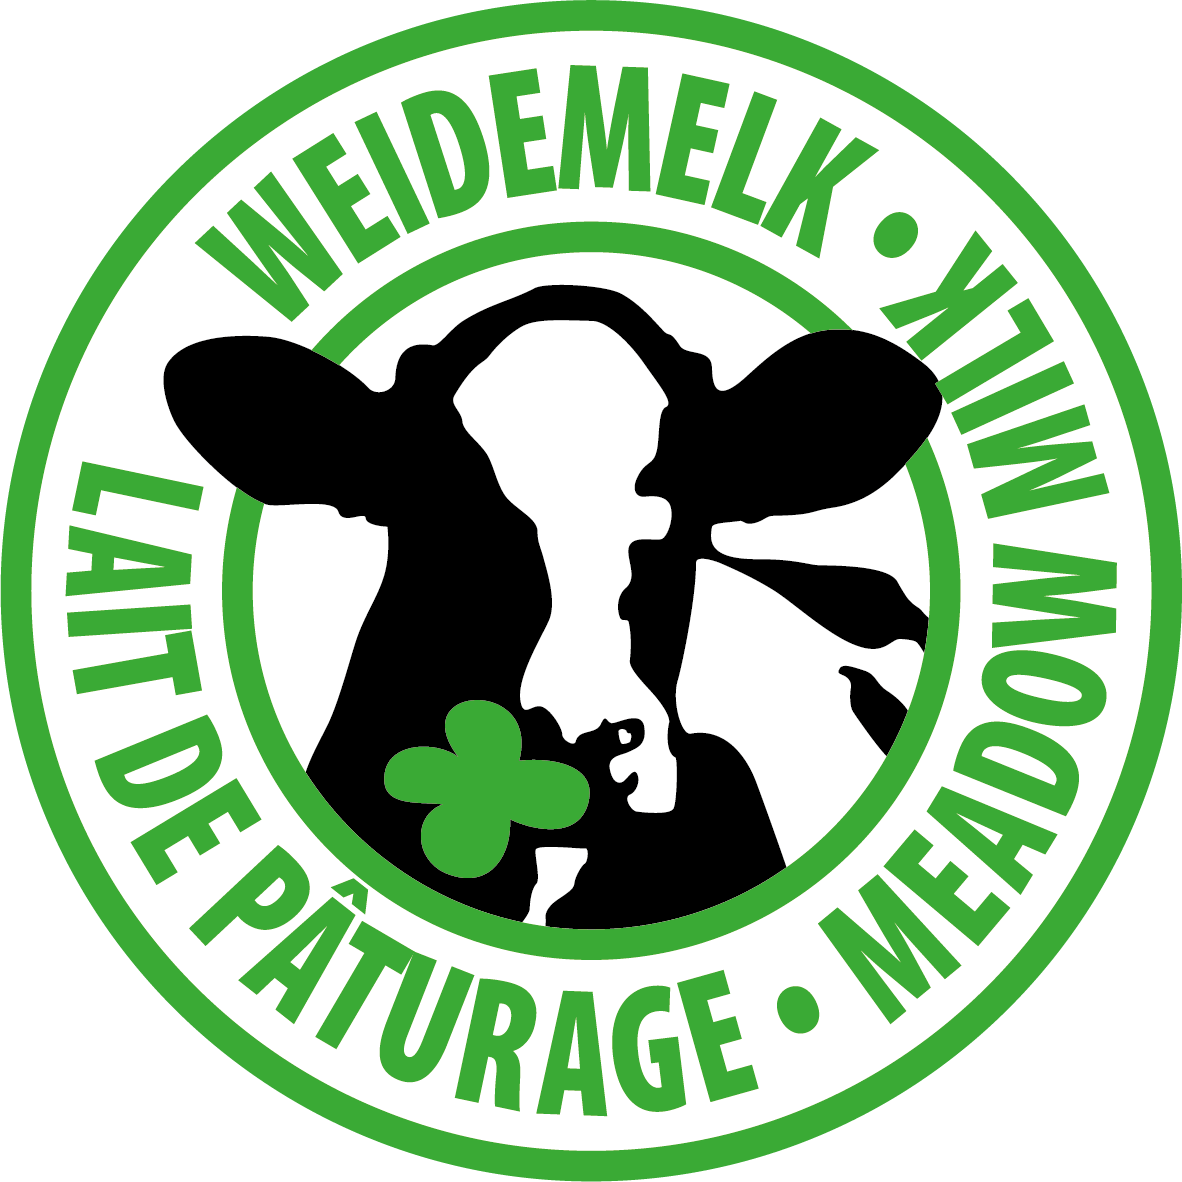 NL EN FR Weidemelk Meadow Milk Lait de Paturage